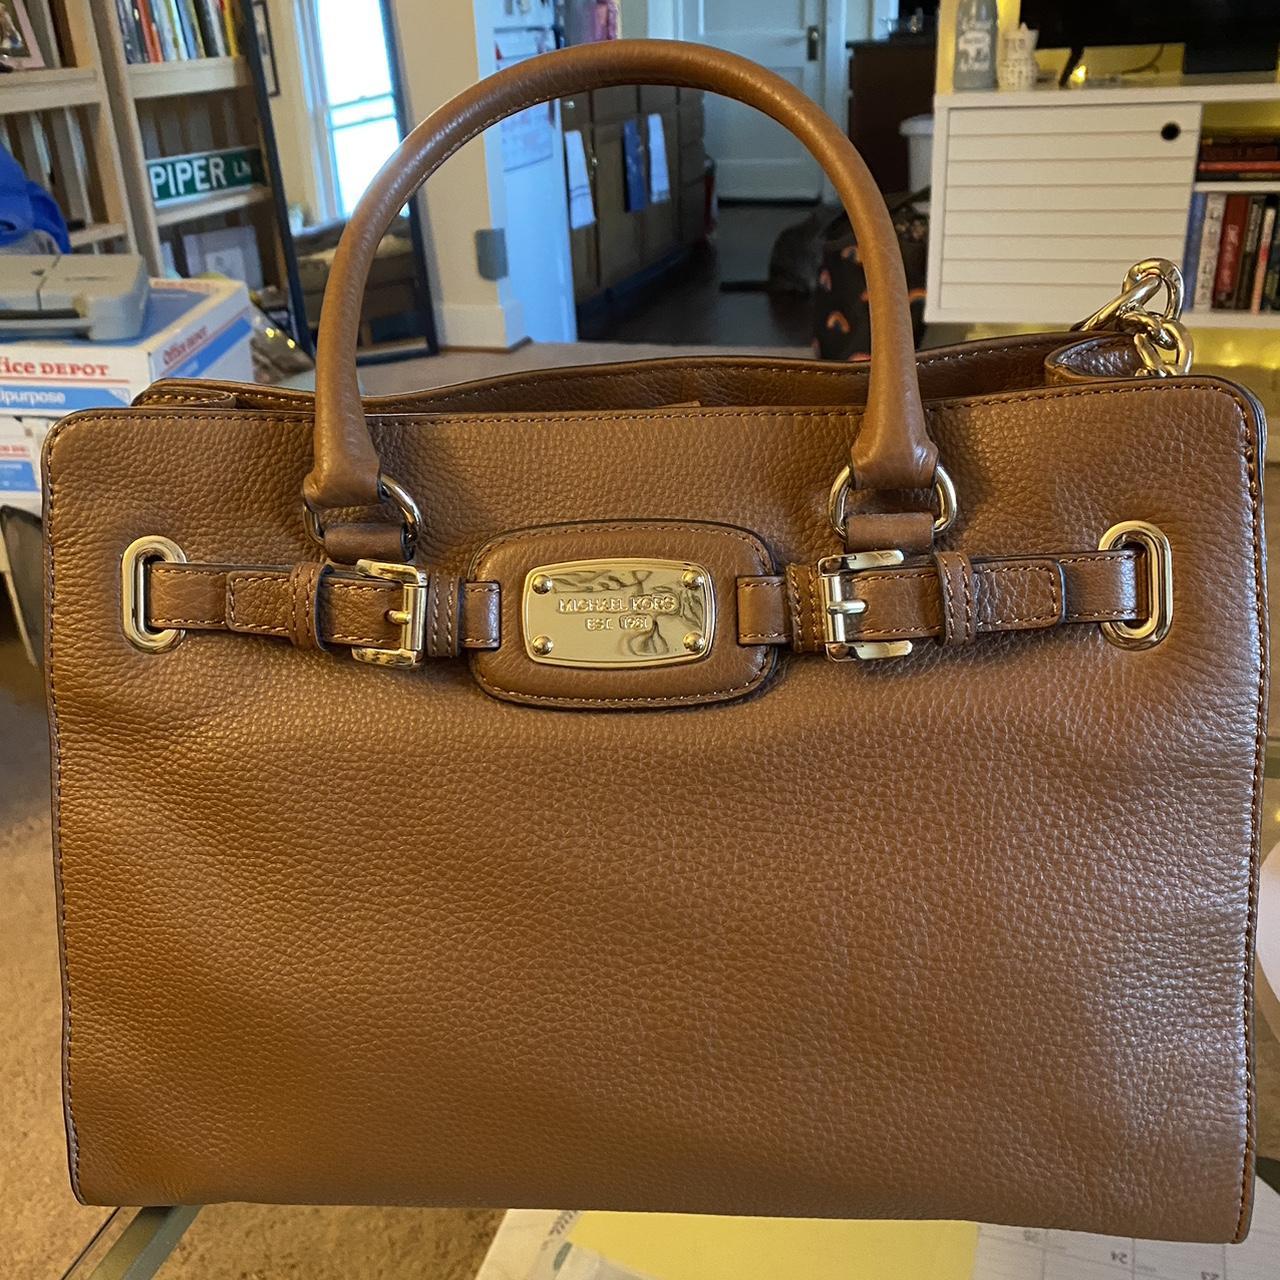 Michael kors crossbody leather handbag brown new with tag